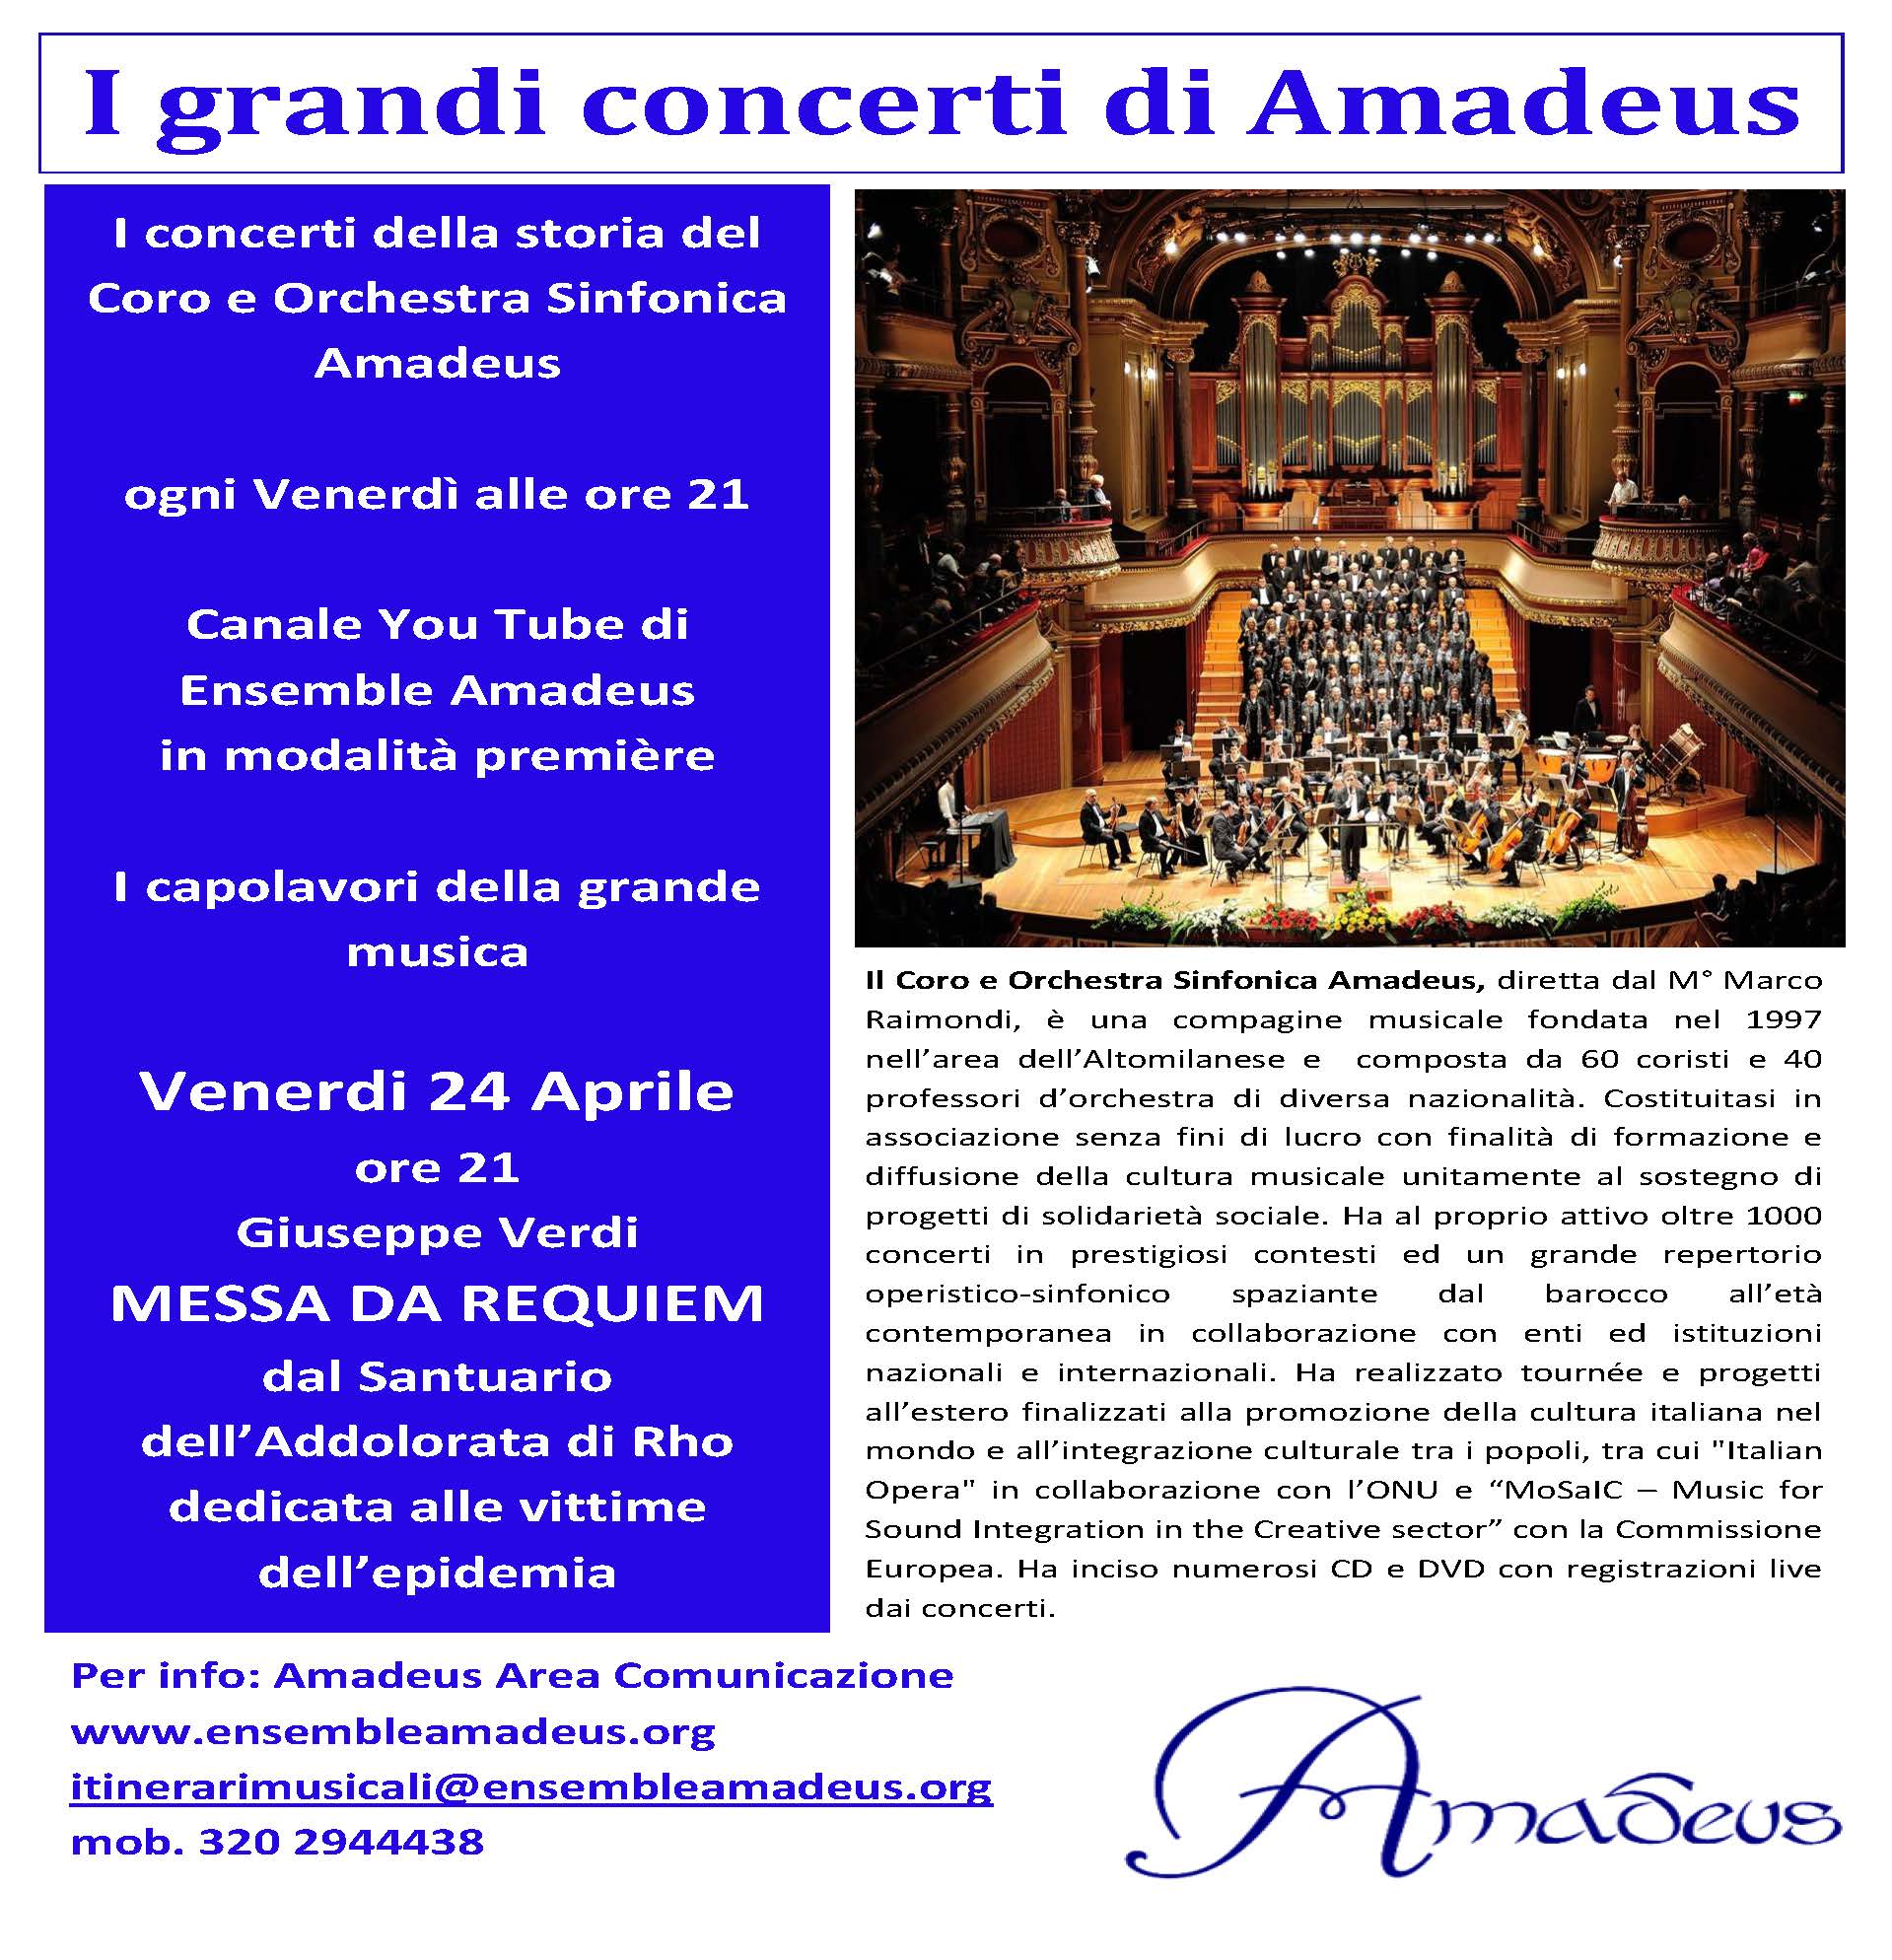 I grandi concerti di Amadeus -Verdi, Requiem